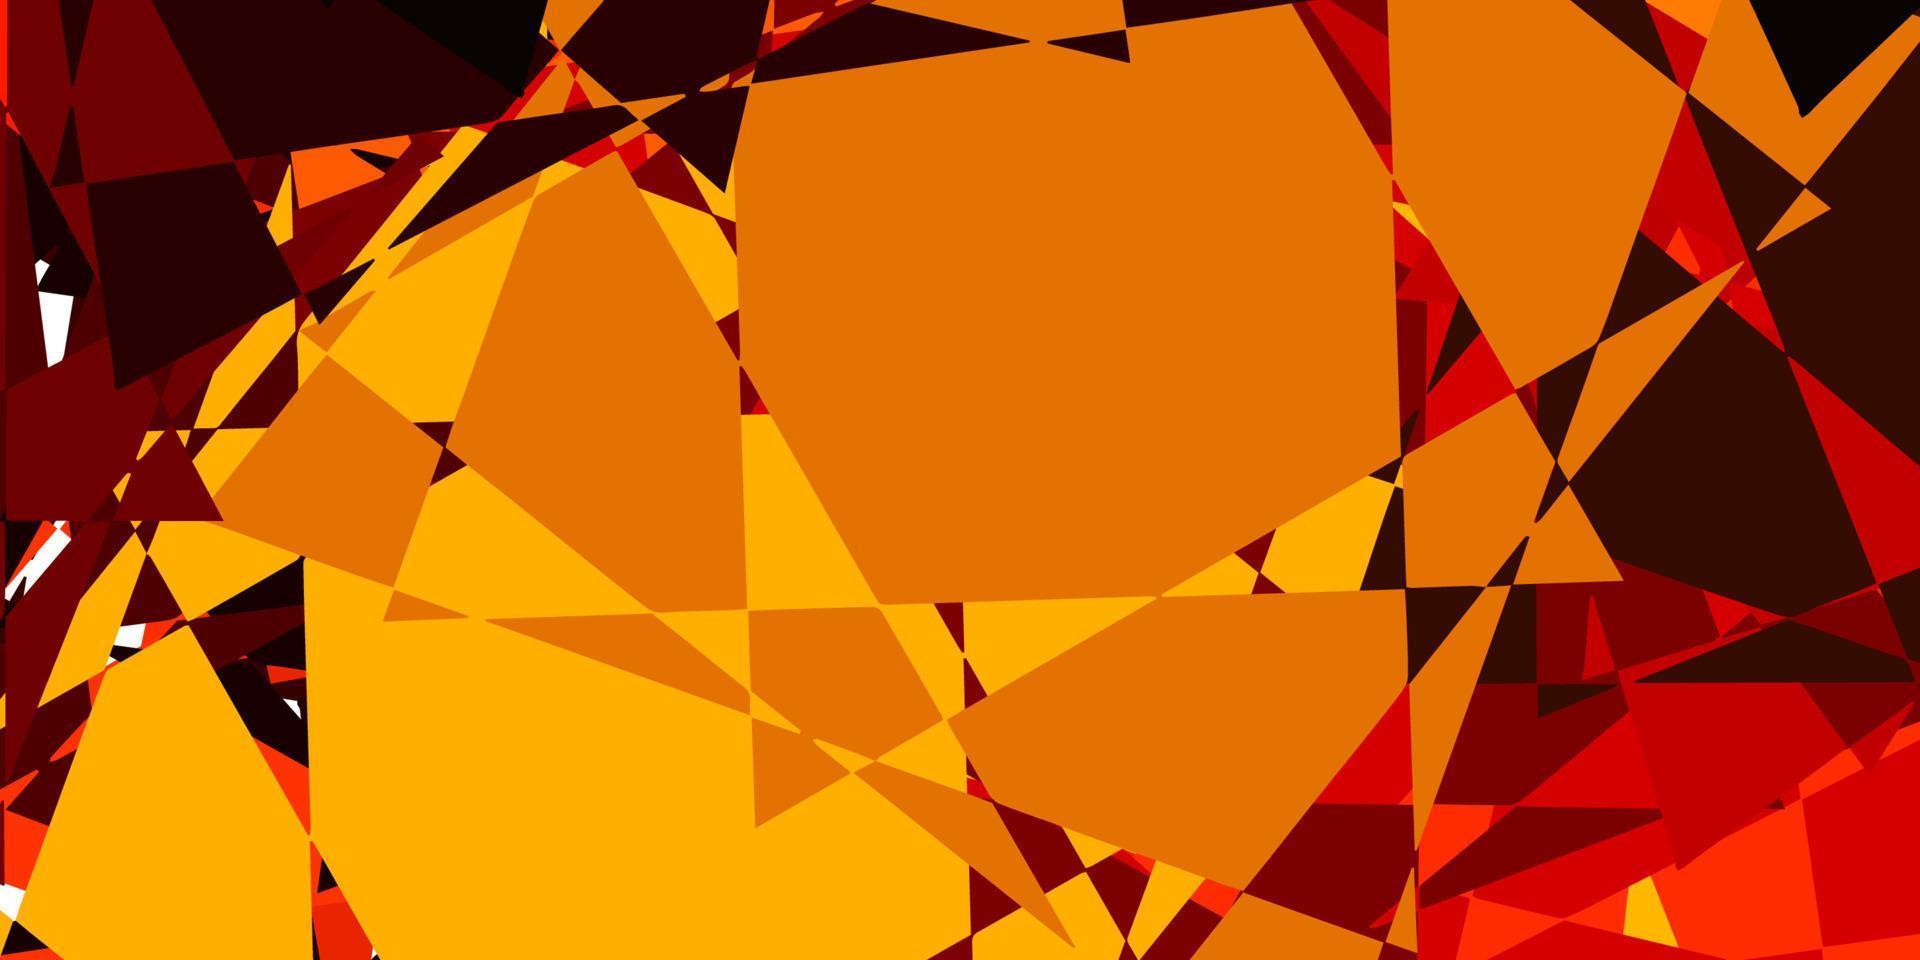 sfondo vettoriale arancione scuro con forme poligonali.